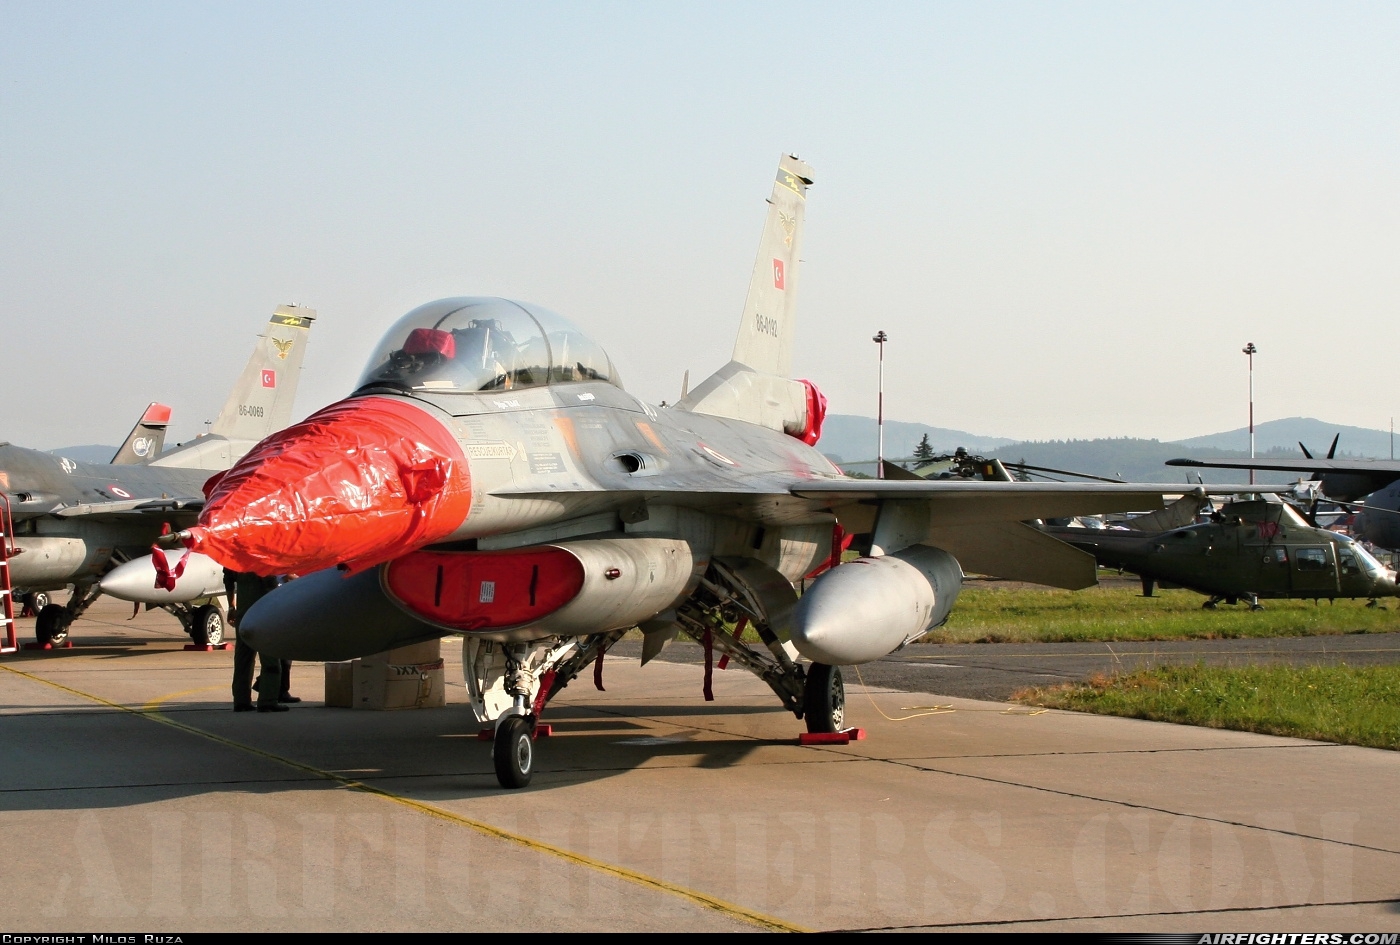 Türkiye - Air Force General Dynamics F-16D Fighting Falcon 86-0192 at Sliac (LZSL), Slovakia